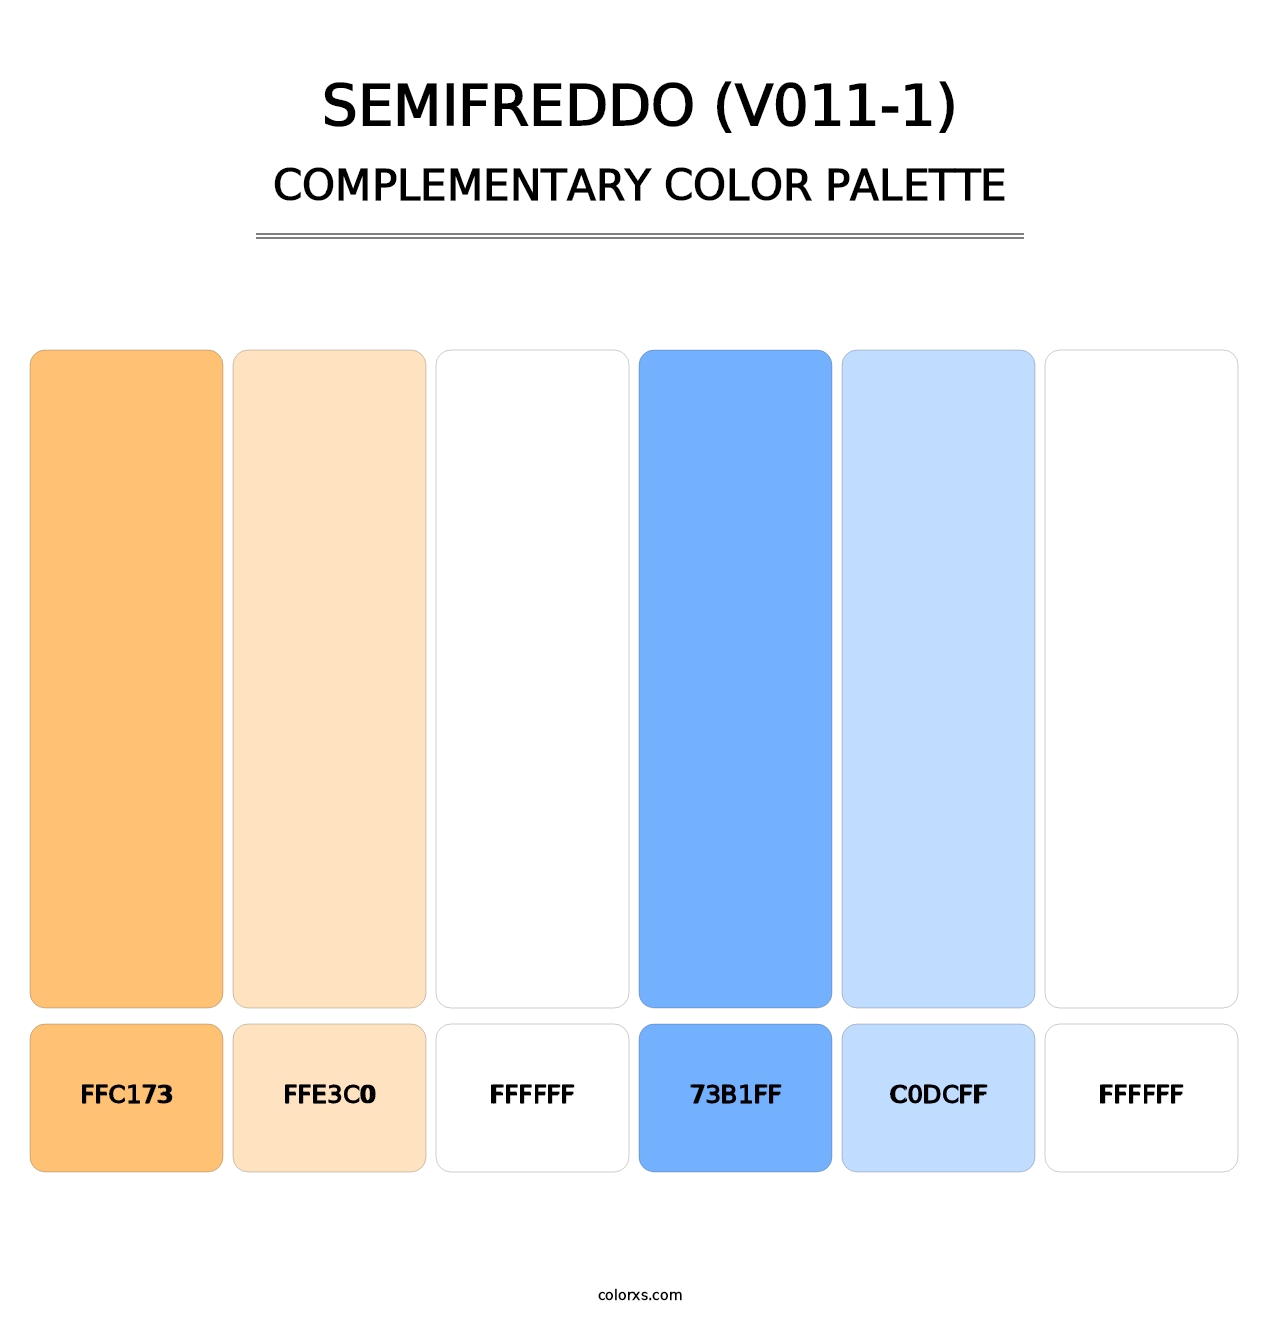 Semifreddo (V011-1) - Complementary Color Palette